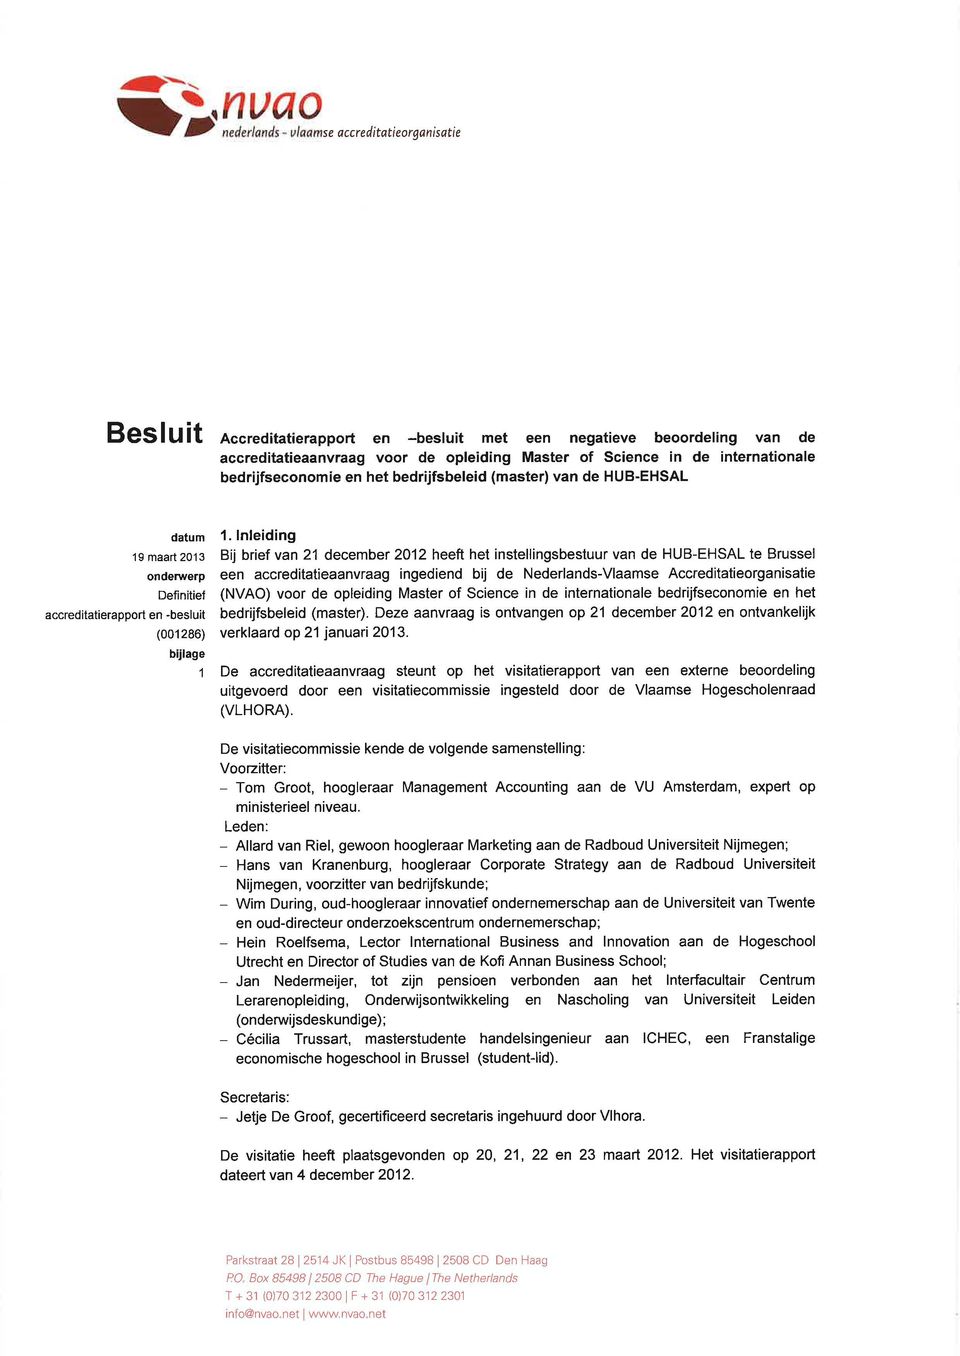 lnleiding Bij brief van 21 december 2012 heeft het instellingsbestuur van de HUB-EHSAL te Brussel een accreditatieaanvraag ingediend bij de Nederlands-Vlaamse Accreditatieorganisatie (NVAO) voor de